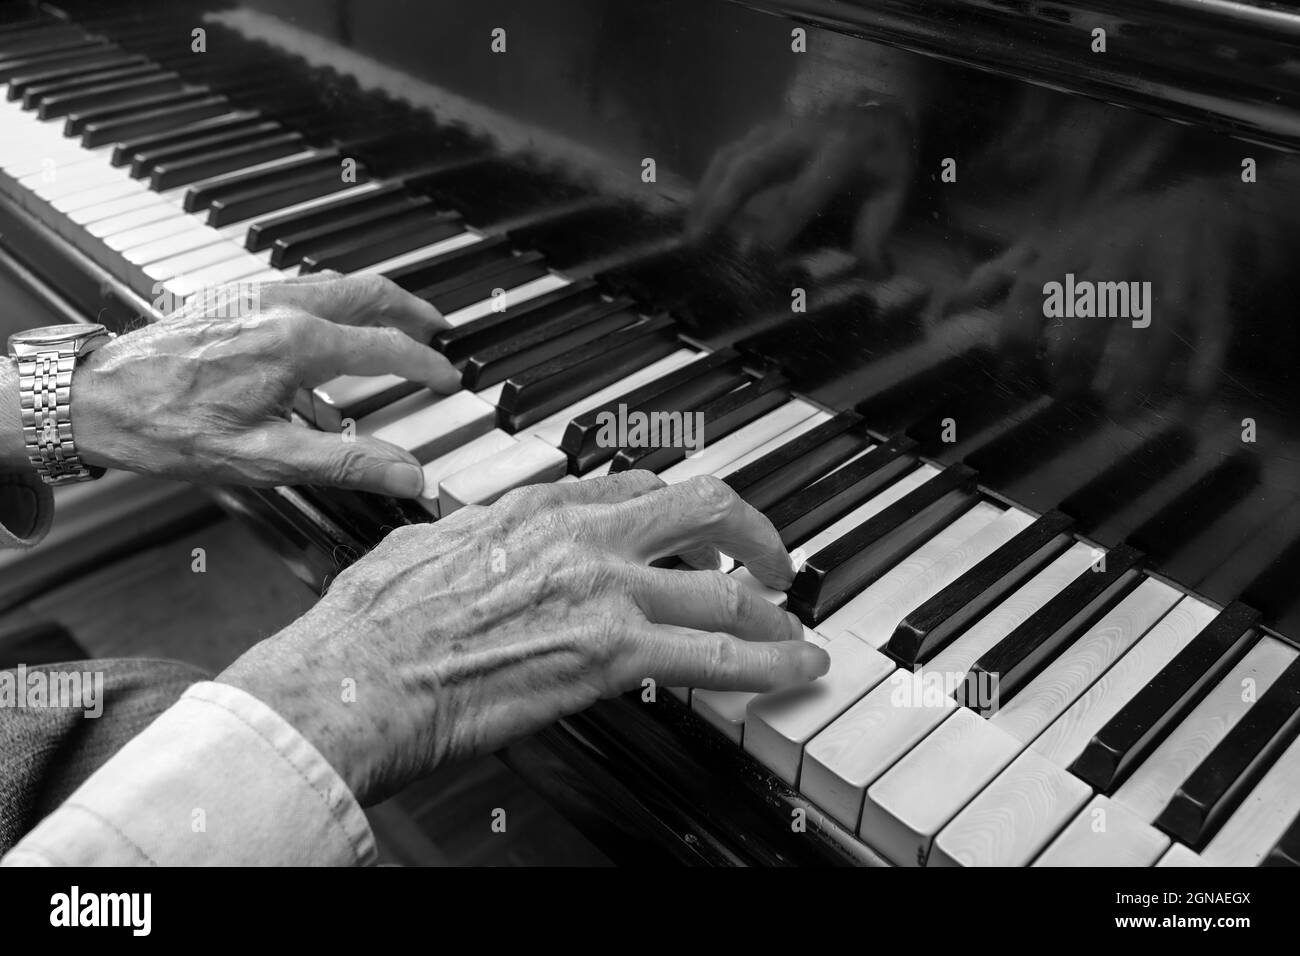 Manos de un viejo músico tocando música en el teclado de un piano de cola, imagen en blanco y negro, concepto de cultura, arte y entretenimiento, espacio de copia Foto de stock